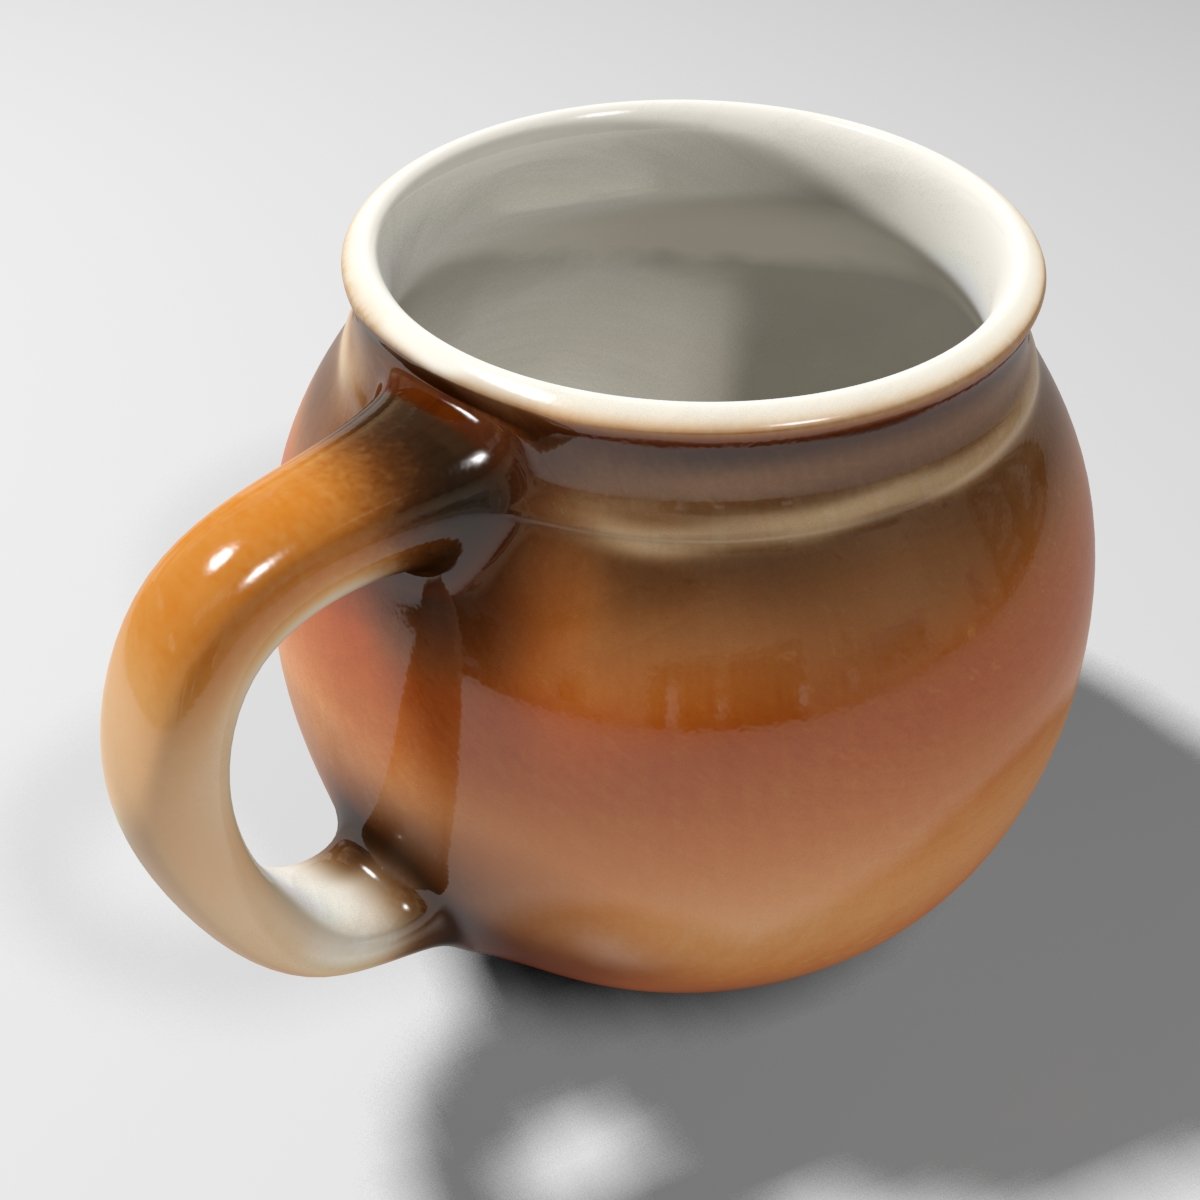 Free 3D Mug Models